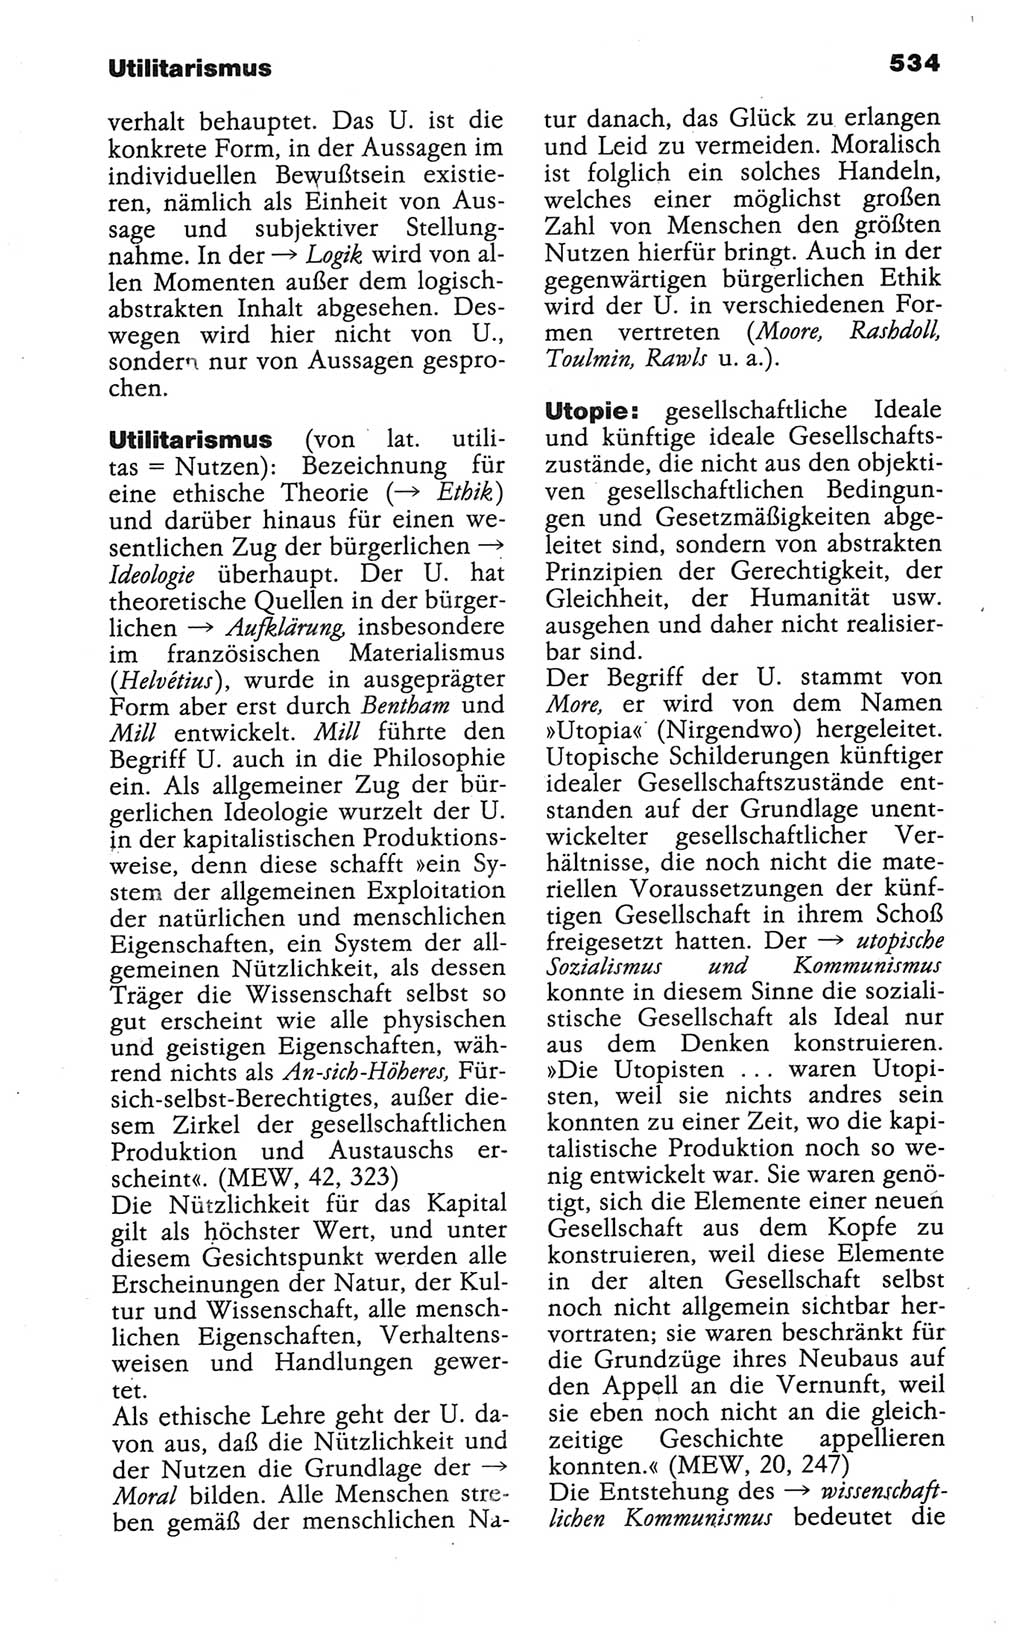 Wörterbuch der marxistisch-leninistischen Philosophie [Deutsche Demokratische Republik (DDR)] 1986, Seite 534 (Wb. ML Phil. DDR 1986, S. 534)